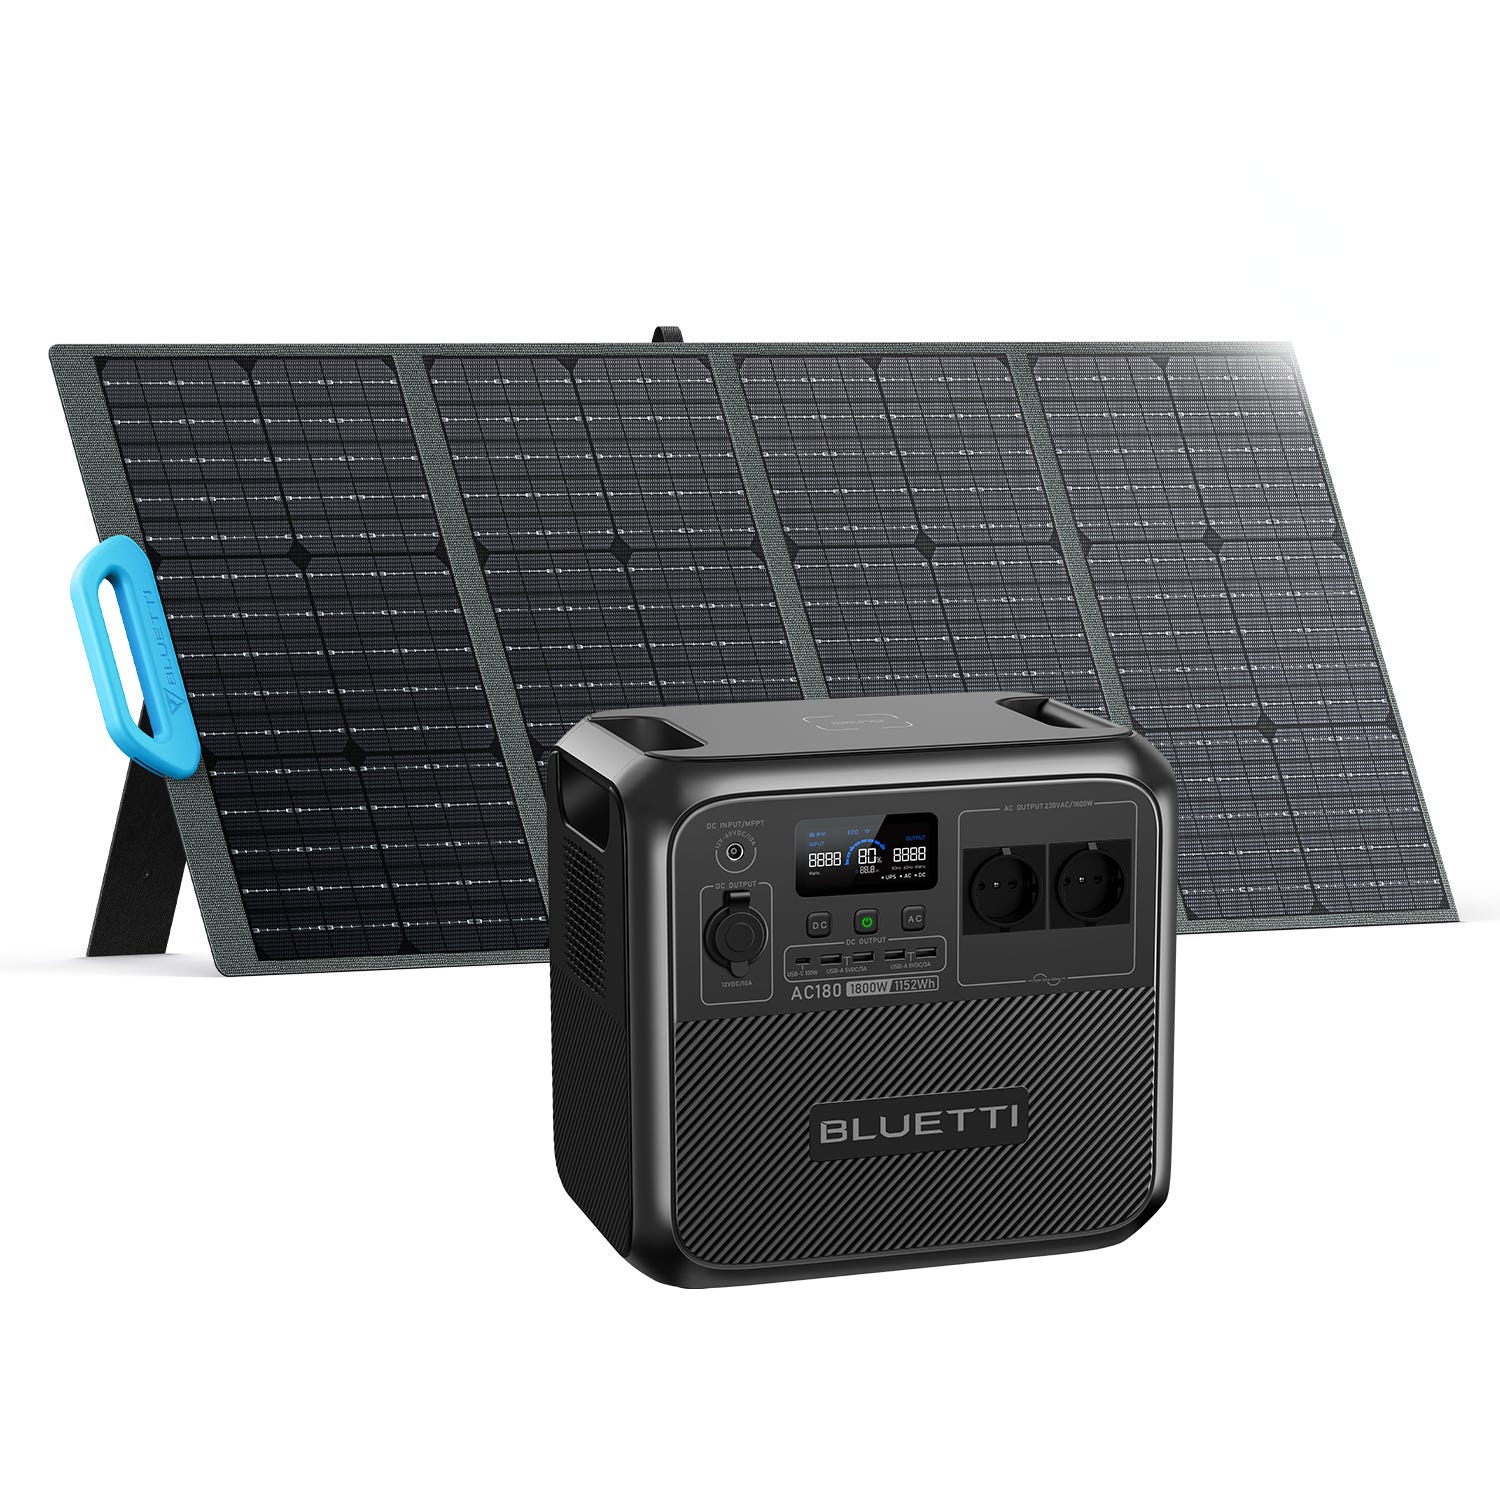 Generador Solar portátil para el hogar, generador Solar portátil